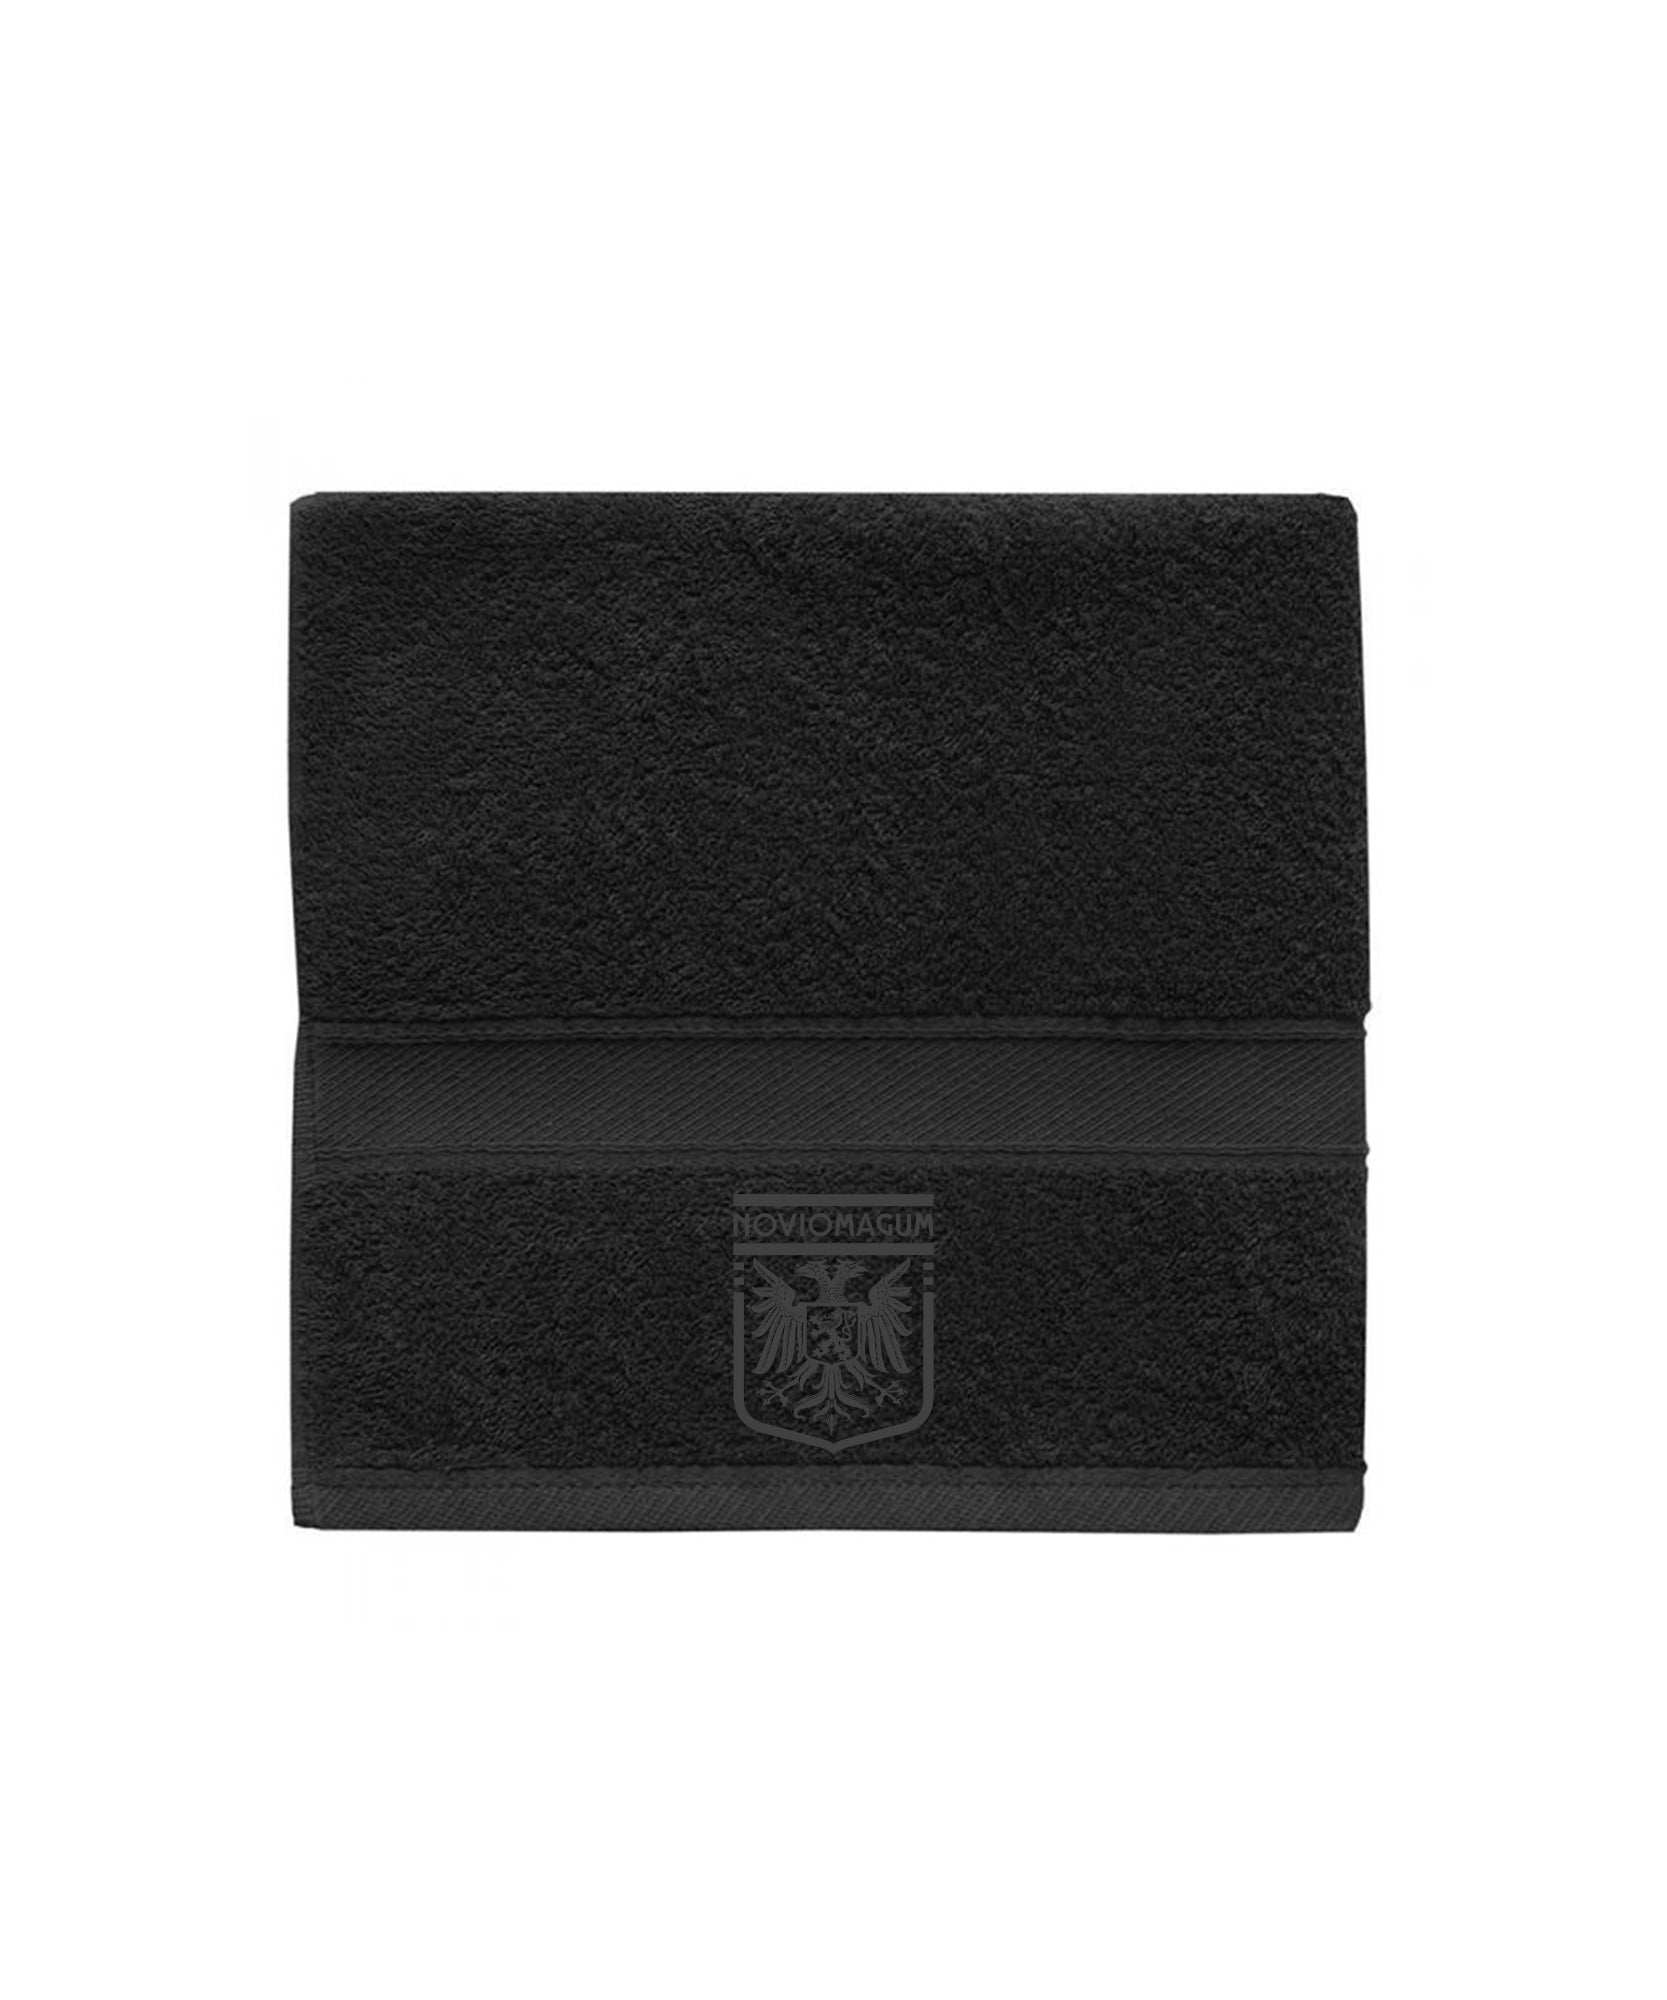 Kleine handdoek in de kleur zwart, met een zwart Noviomagum logo.